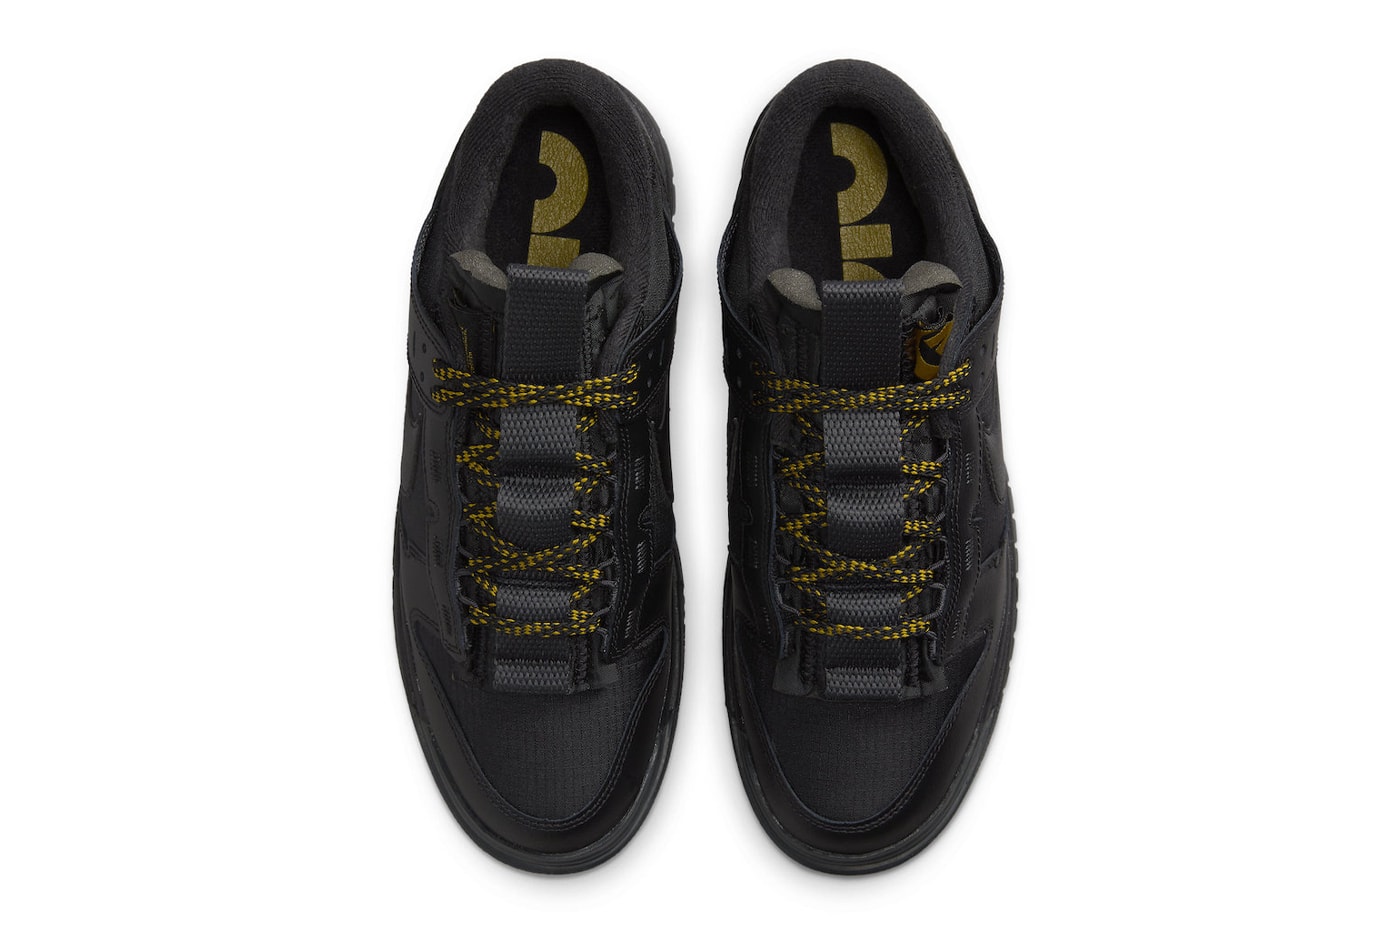 ナイキ ダンクロー リマスタードからラグジュアリーな雰囲気のブラック/ゴールドが登場 Nike Dunk Low Remastered Appears in Black and Gold FB8894-001 Black/Black-Metallic Gold low top skater shoes holiday 2023 swoosh